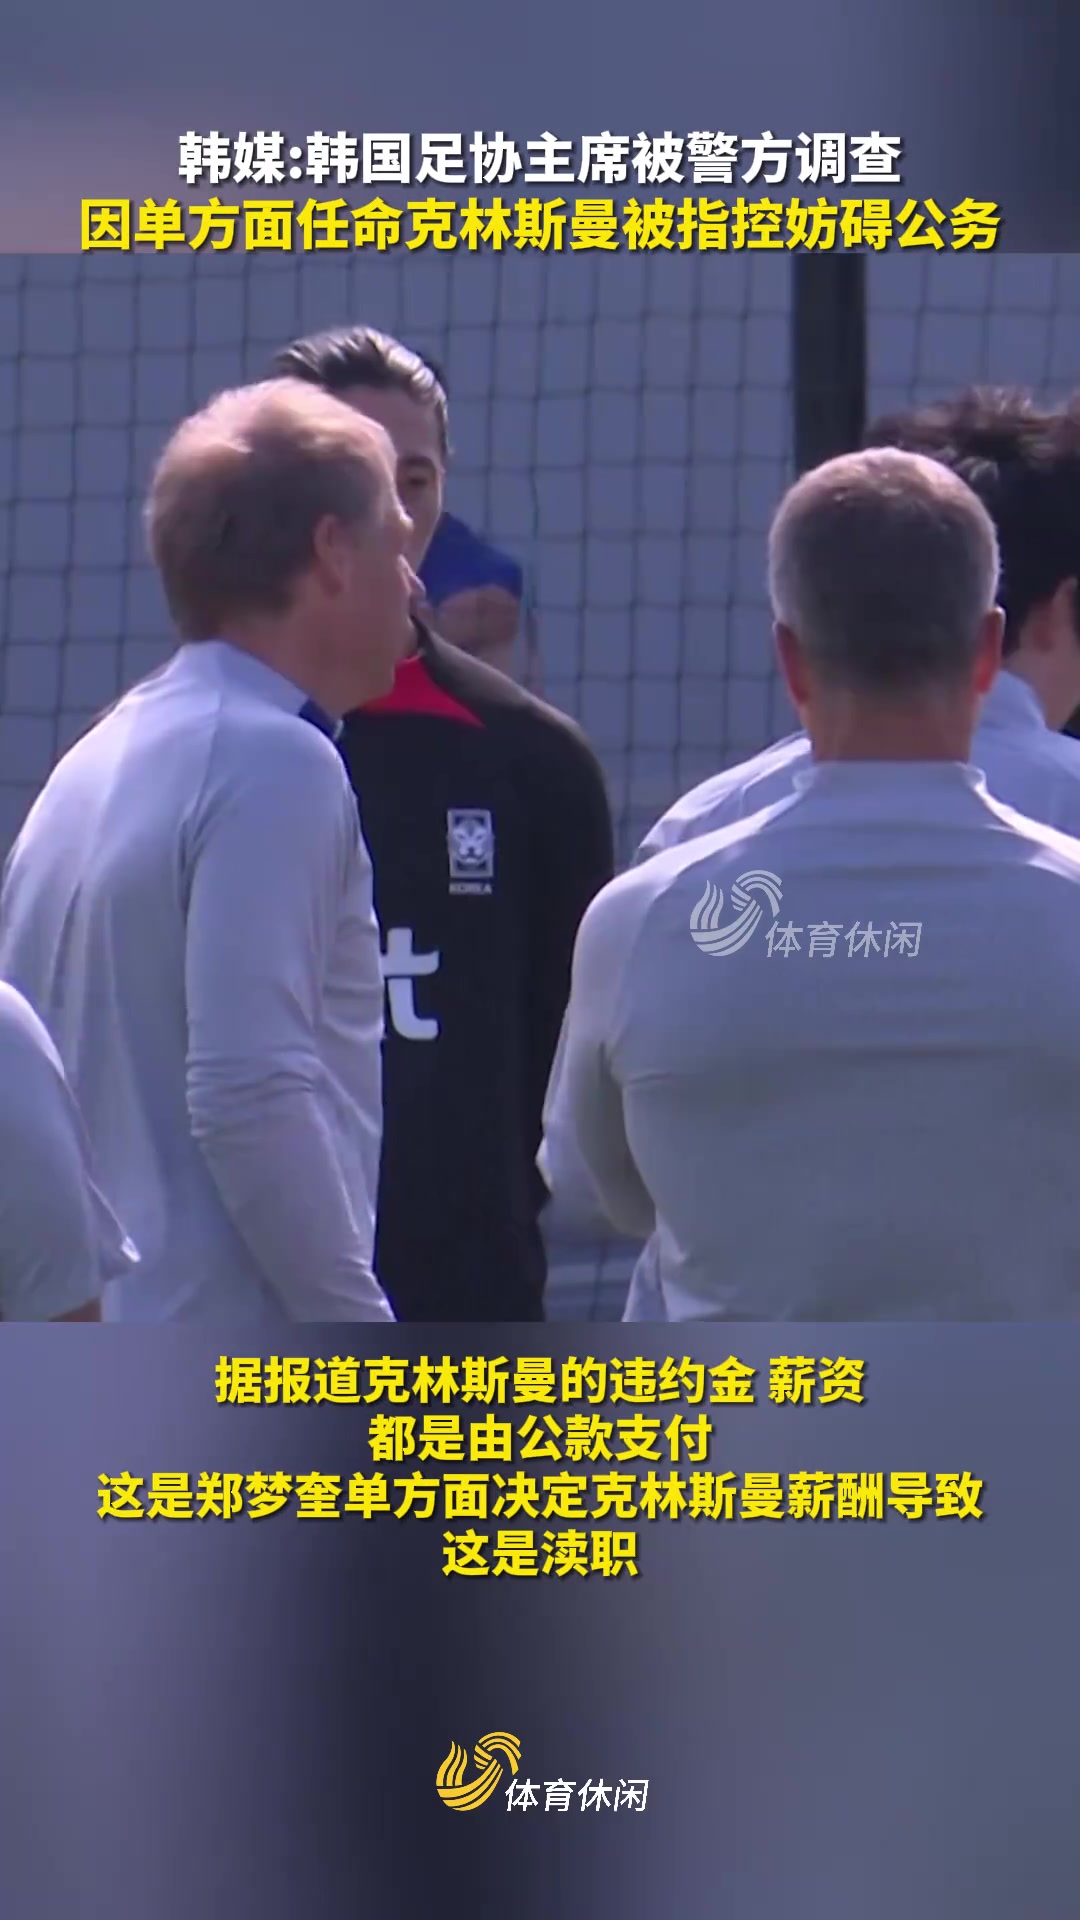 韩国足协*郑梦奎正接受警方调查，他因单方面任命克林斯曼被指控为“妨碍公务”